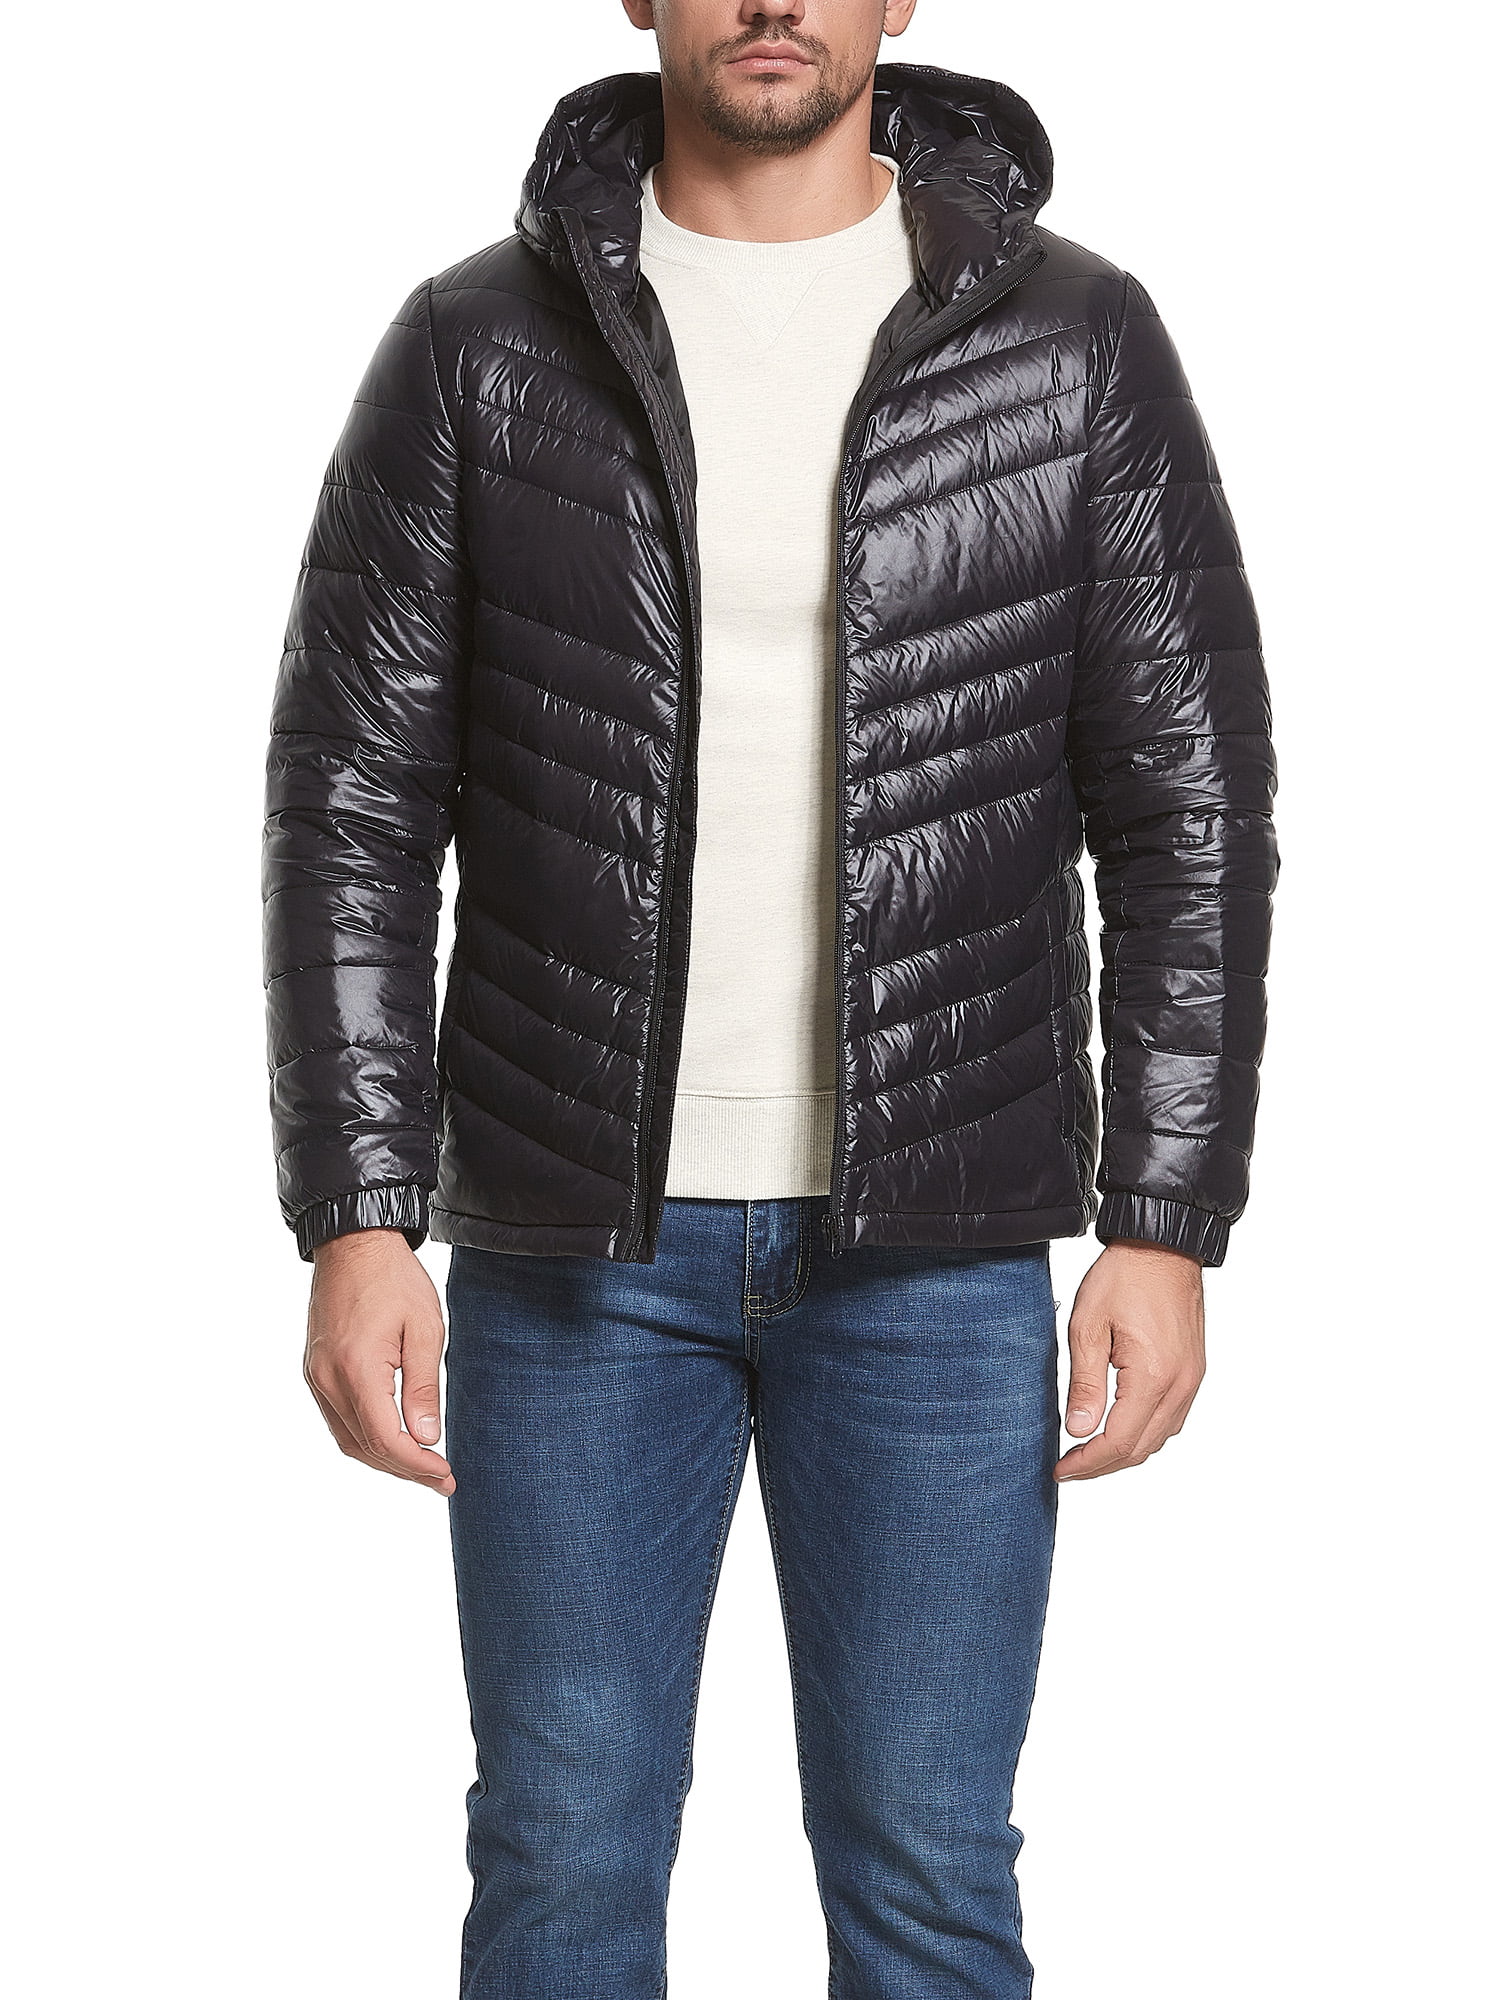 Oberora-Men Lightweight Packable Long Hooded Down Puffer Coats Jacket Outwear 